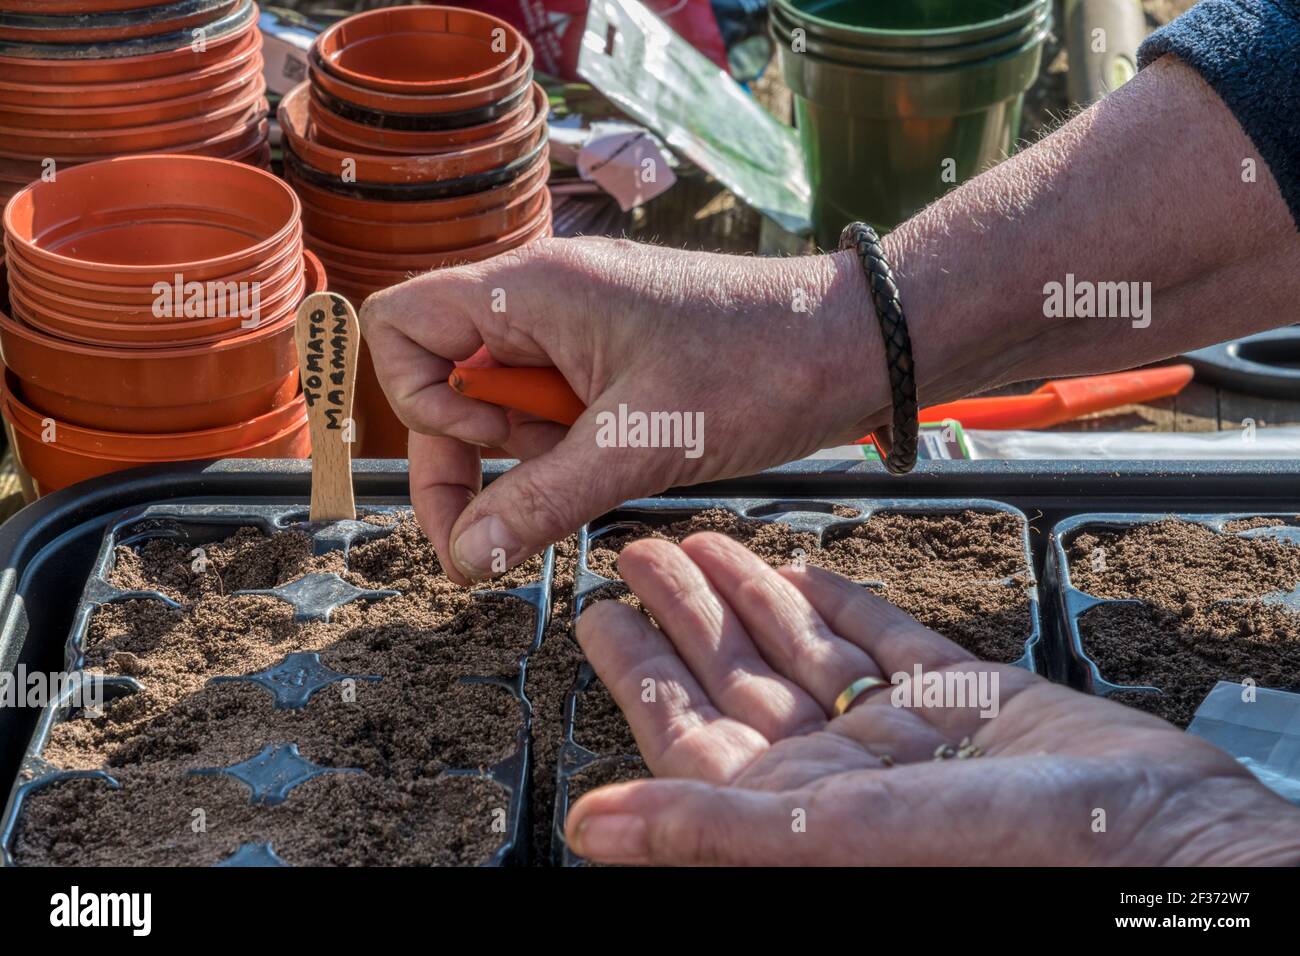 Frau, die Marmande-Tomatensamen, Solanum lycopersicum aussaat, wiederverwendet Plastikbehälter aus einem Gartencenter, um zu vermeiden, dass sie auf Deponien landen. Stockfoto